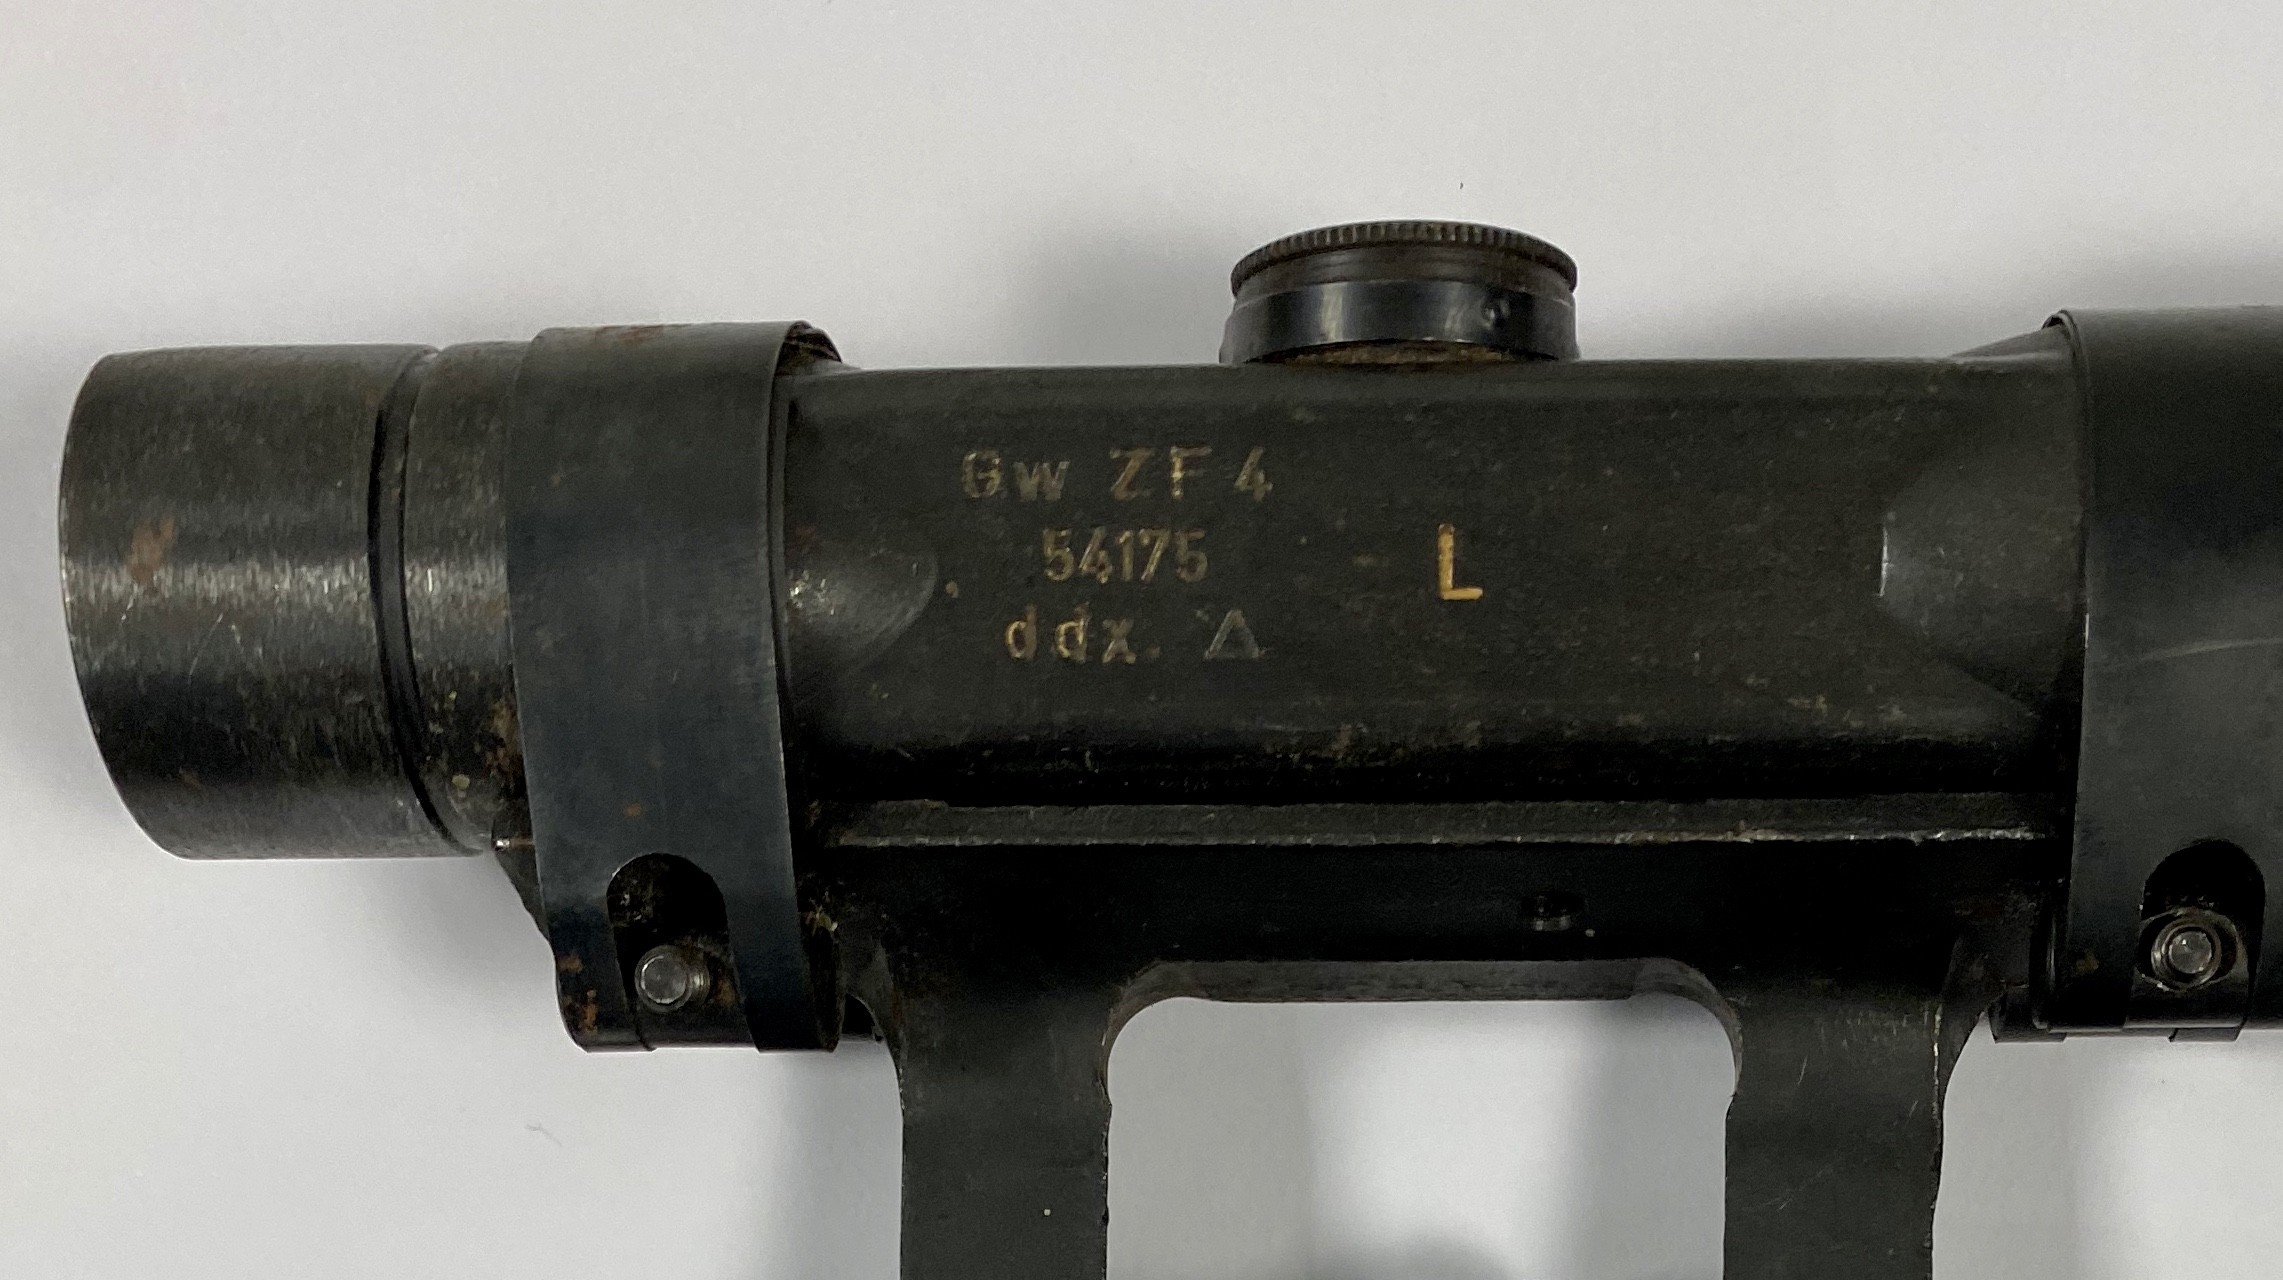 VISOR ZF4 WALTHER PARA FG42 producido poir Walther codigo ddx y con el más raro marcaje L exclusivo para el fusil ametrallador de Paracaidista FG4